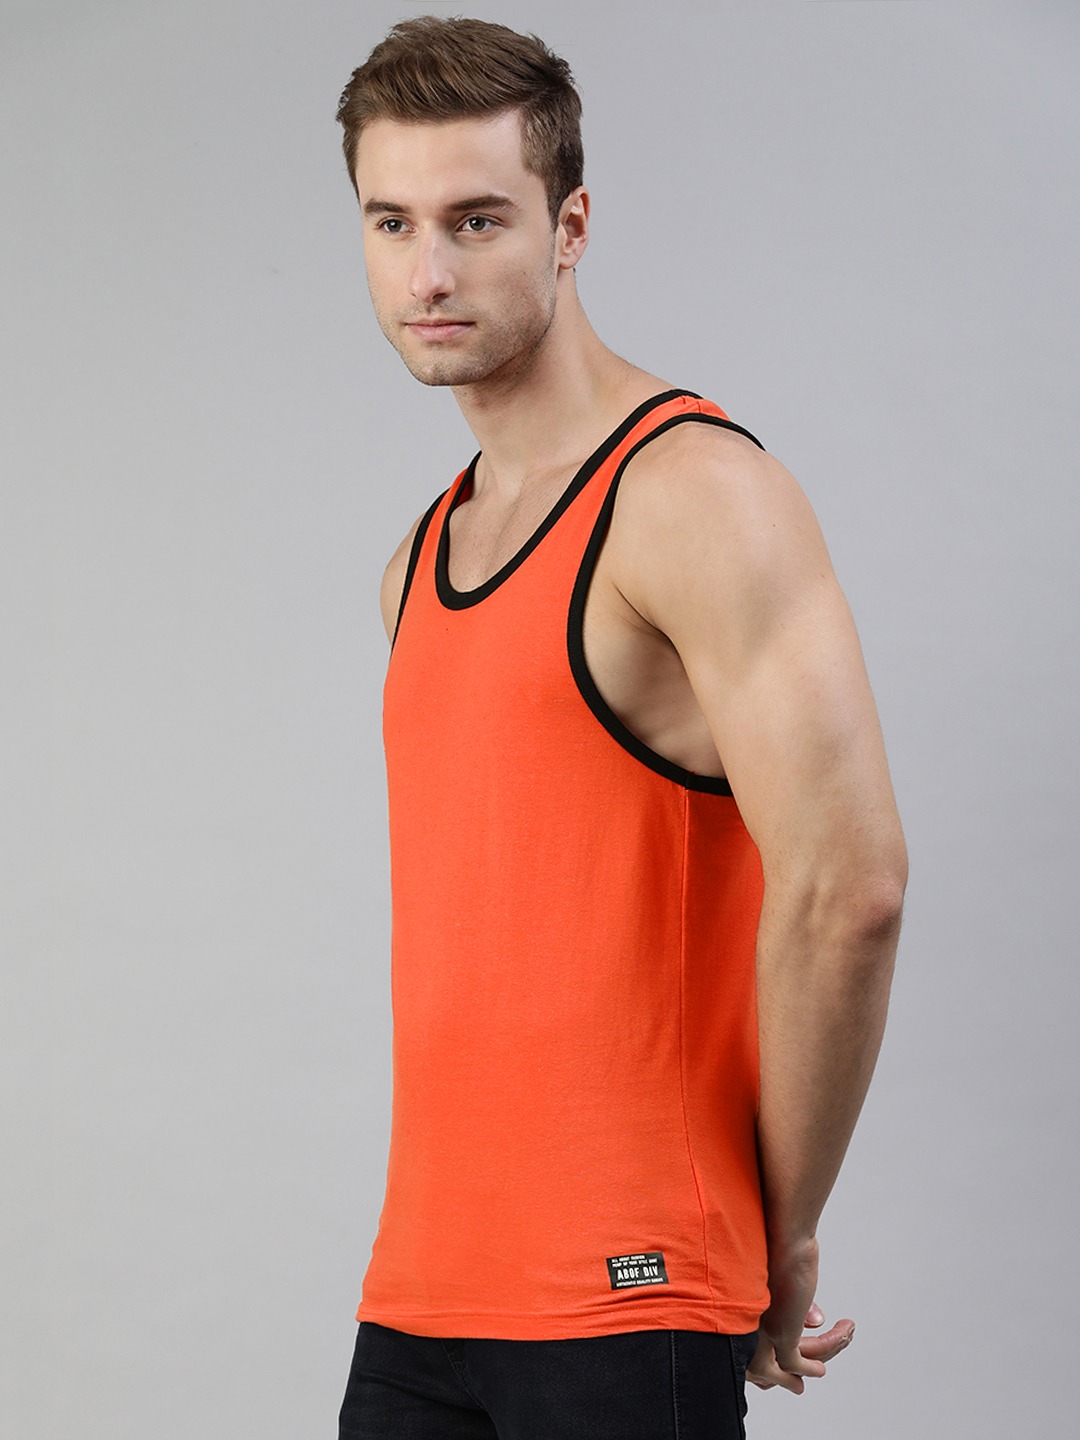 Clothing Innerwear Vests | abof Men Orange & White Printed Pure Cotton Innerwear Vest - GT61160